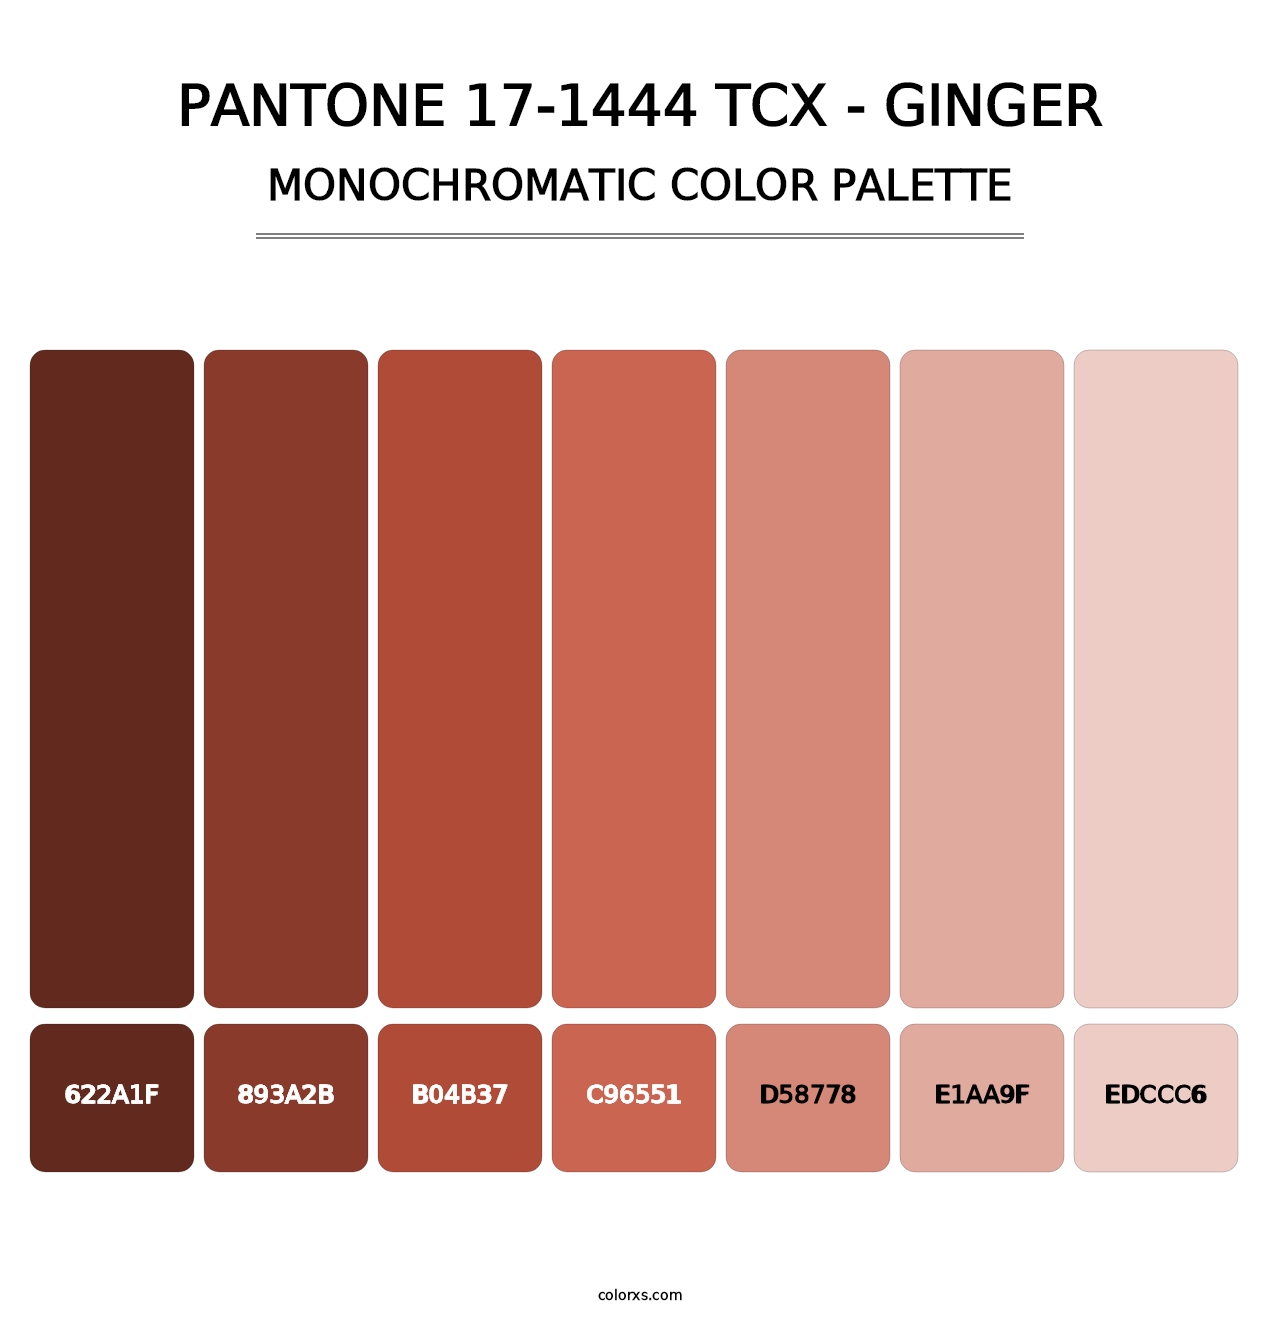 PANTONE 17-1444 TCX - Ginger - Monochromatic Color Palette